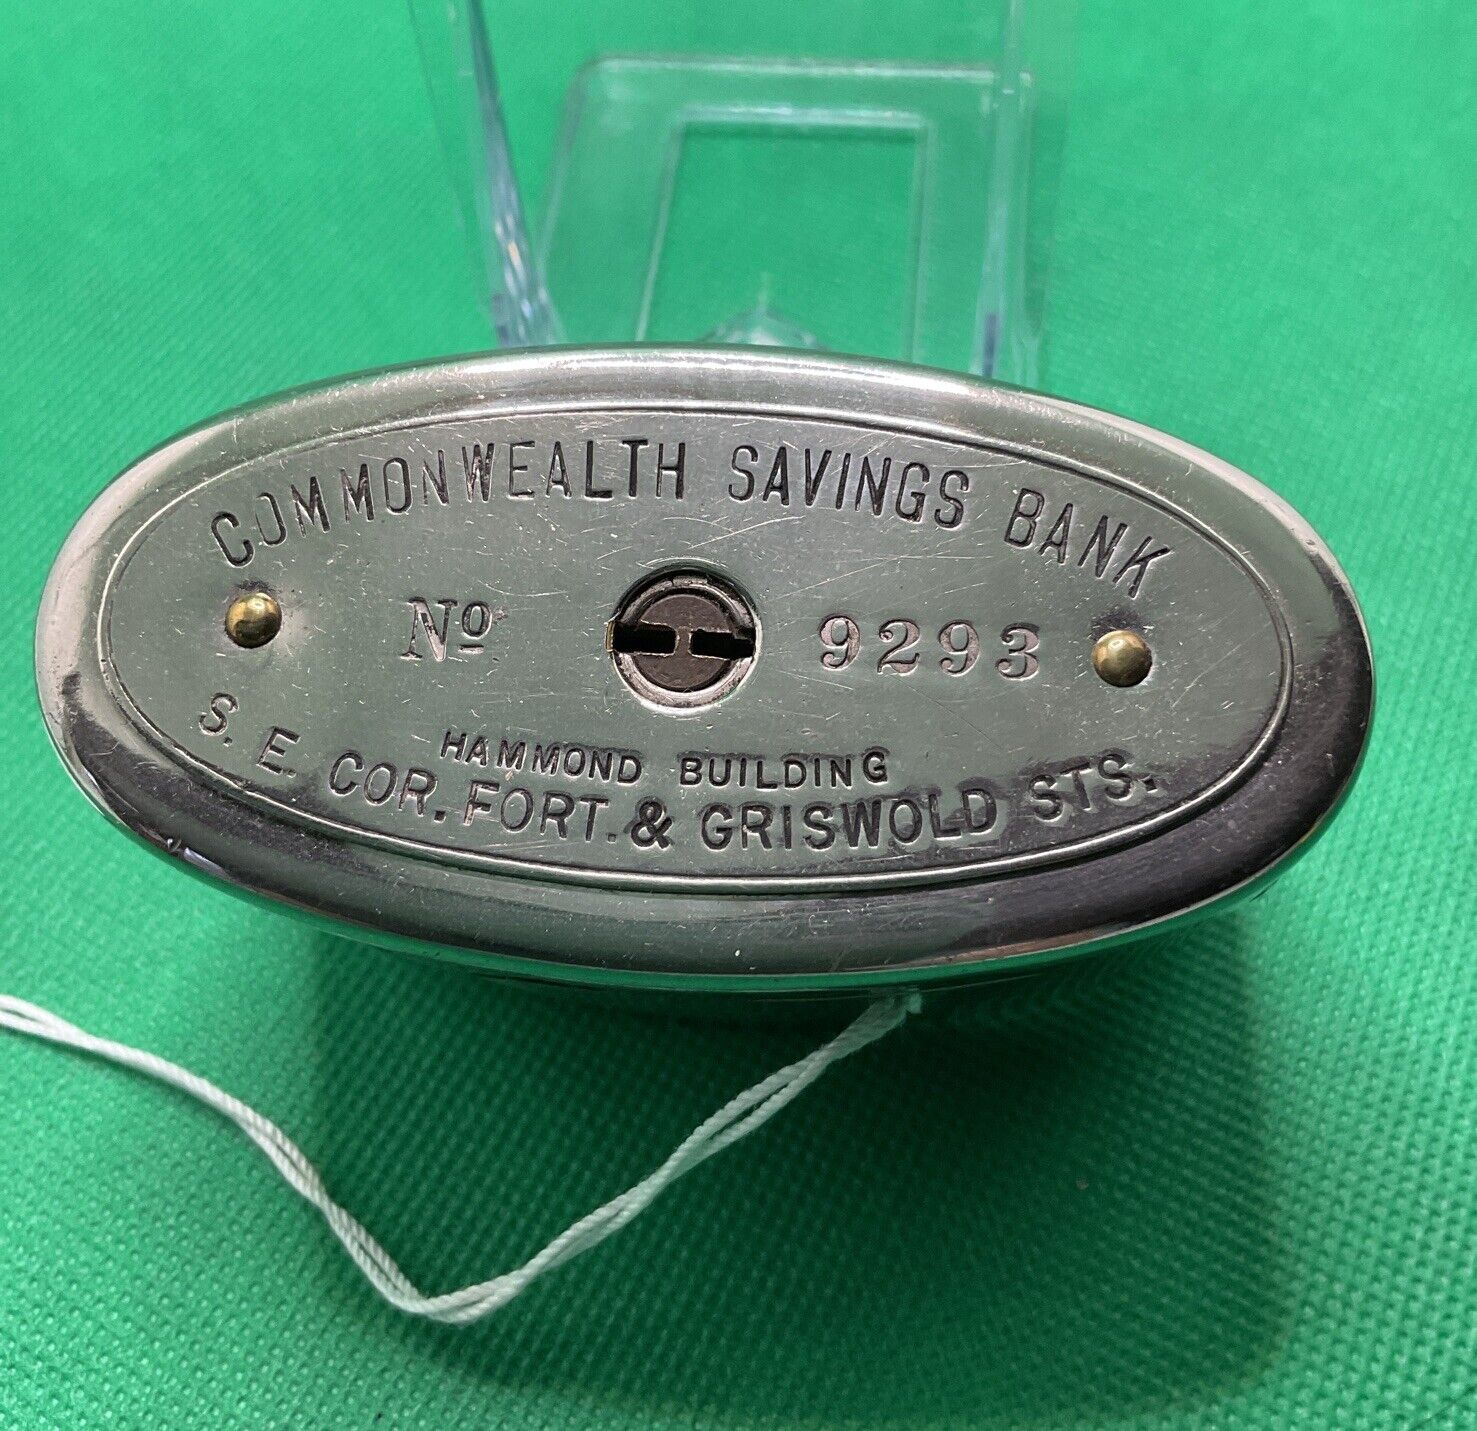 Vintage Oval Commonwealth Savings Bank #9293 No Key